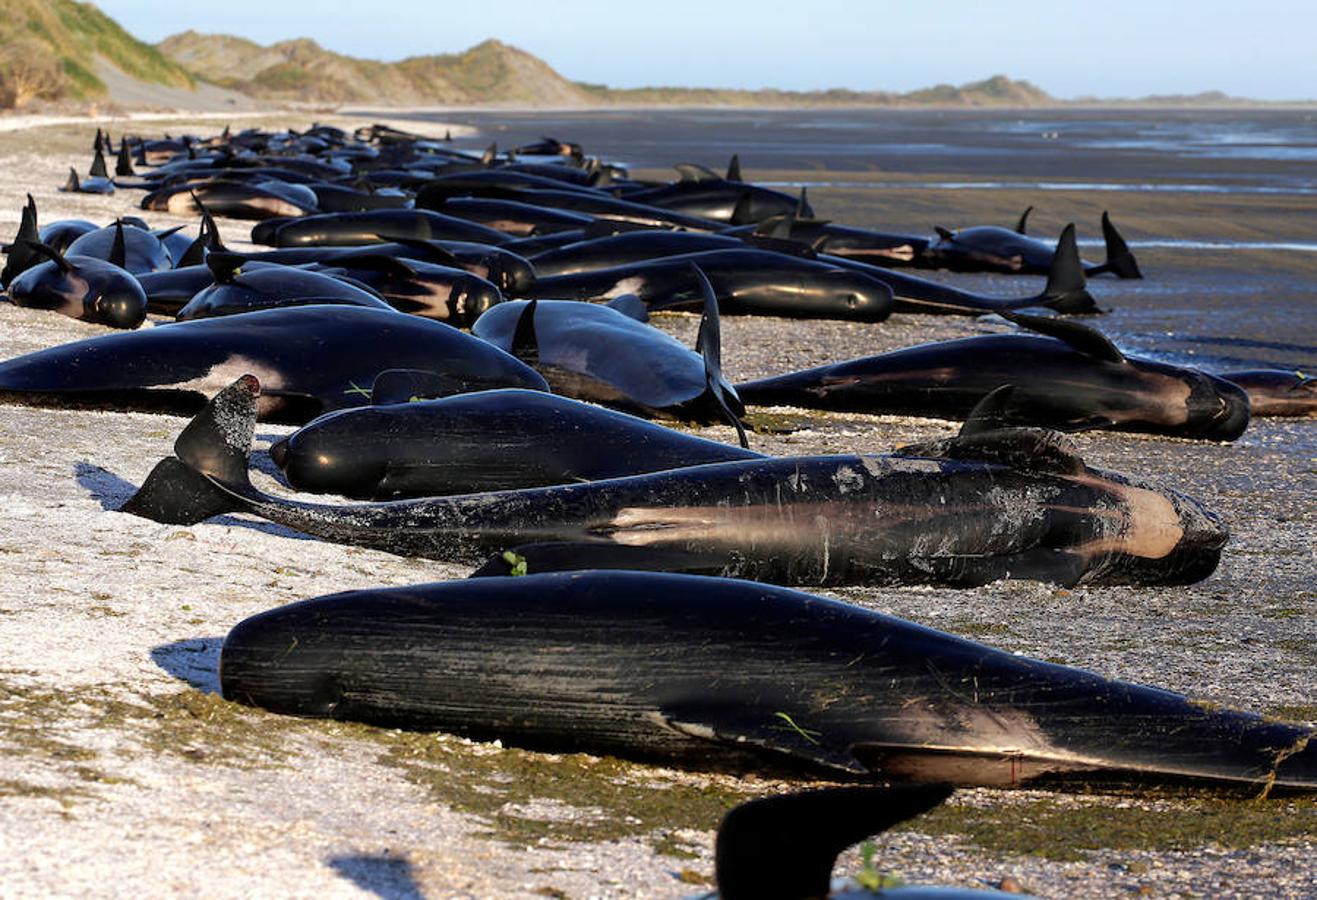 Las ballenas piloto han quedado varadas en una playa en Farewell Spit, en la isla Sur. Decenas de voluntarios y ecologistas de la zona se encuentran en la playa tratando de mantener con vida a las ballenas que han sobrevivido